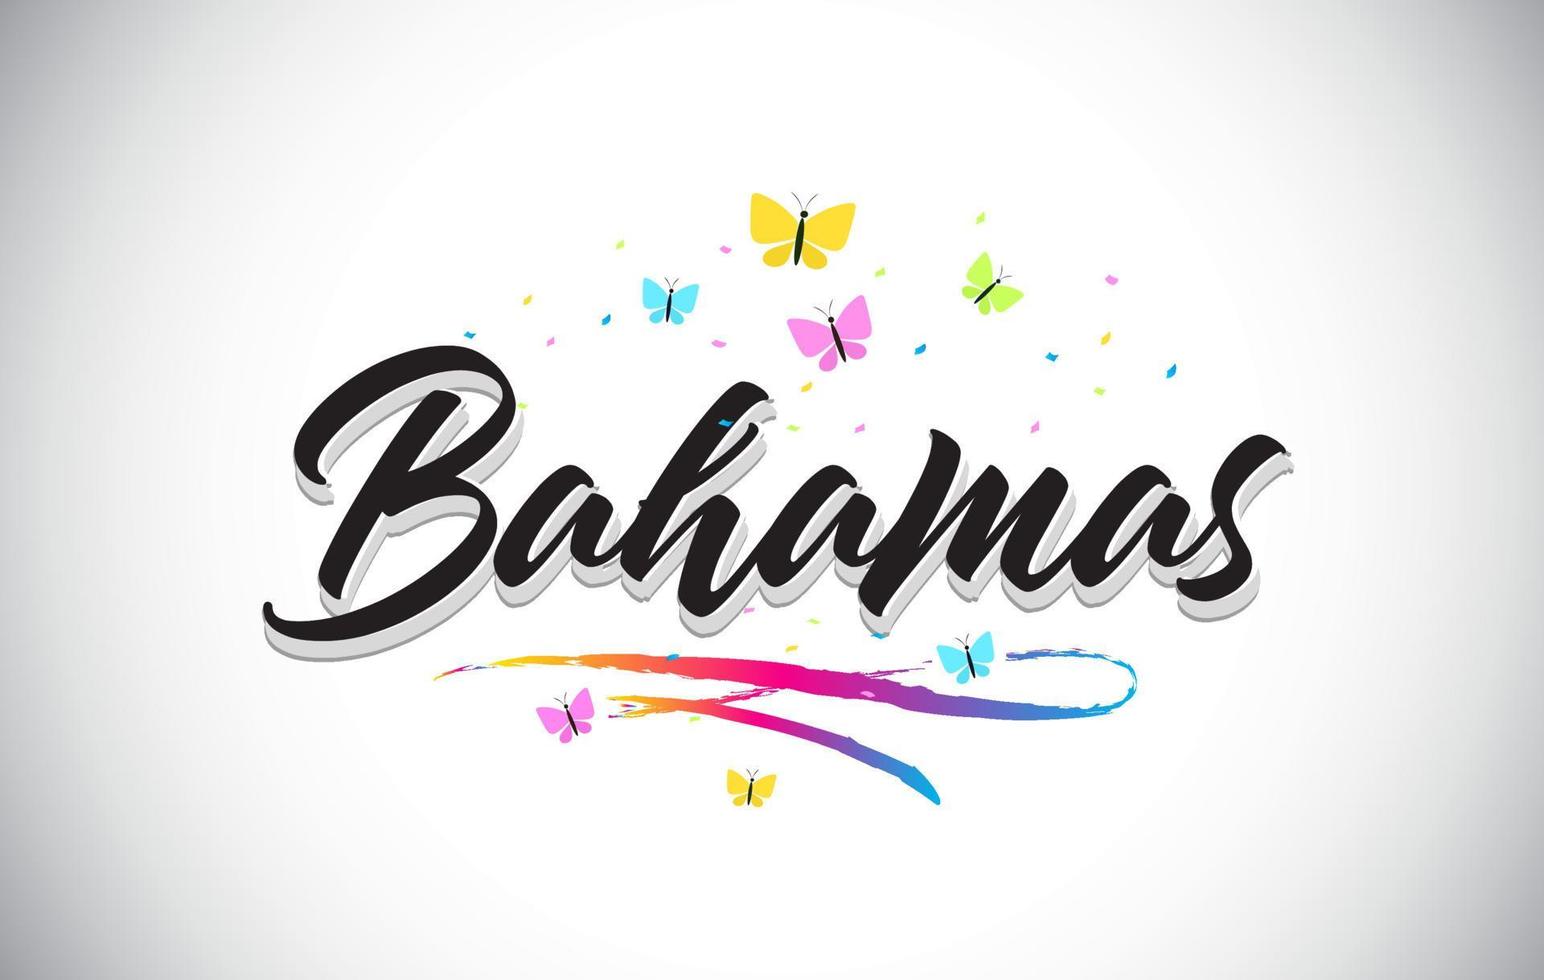 testo di parola vettoriale scritto a mano Bahamas con farfalle e swoosh colorato.